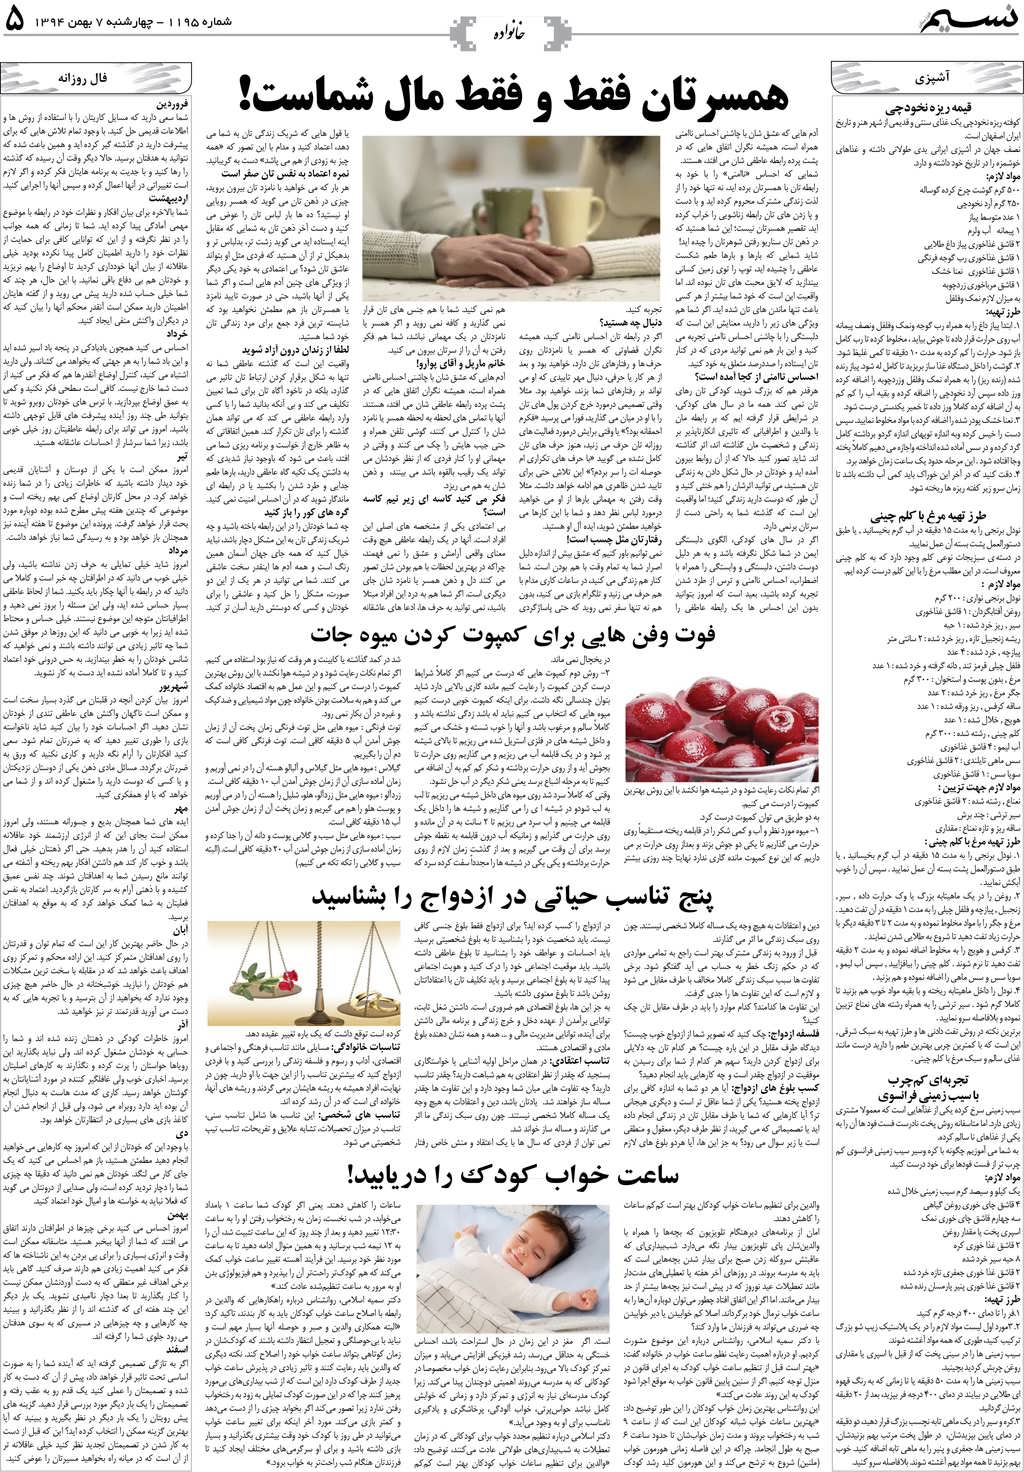 صفحه خانواده روزنامه نسیم شماره 1195